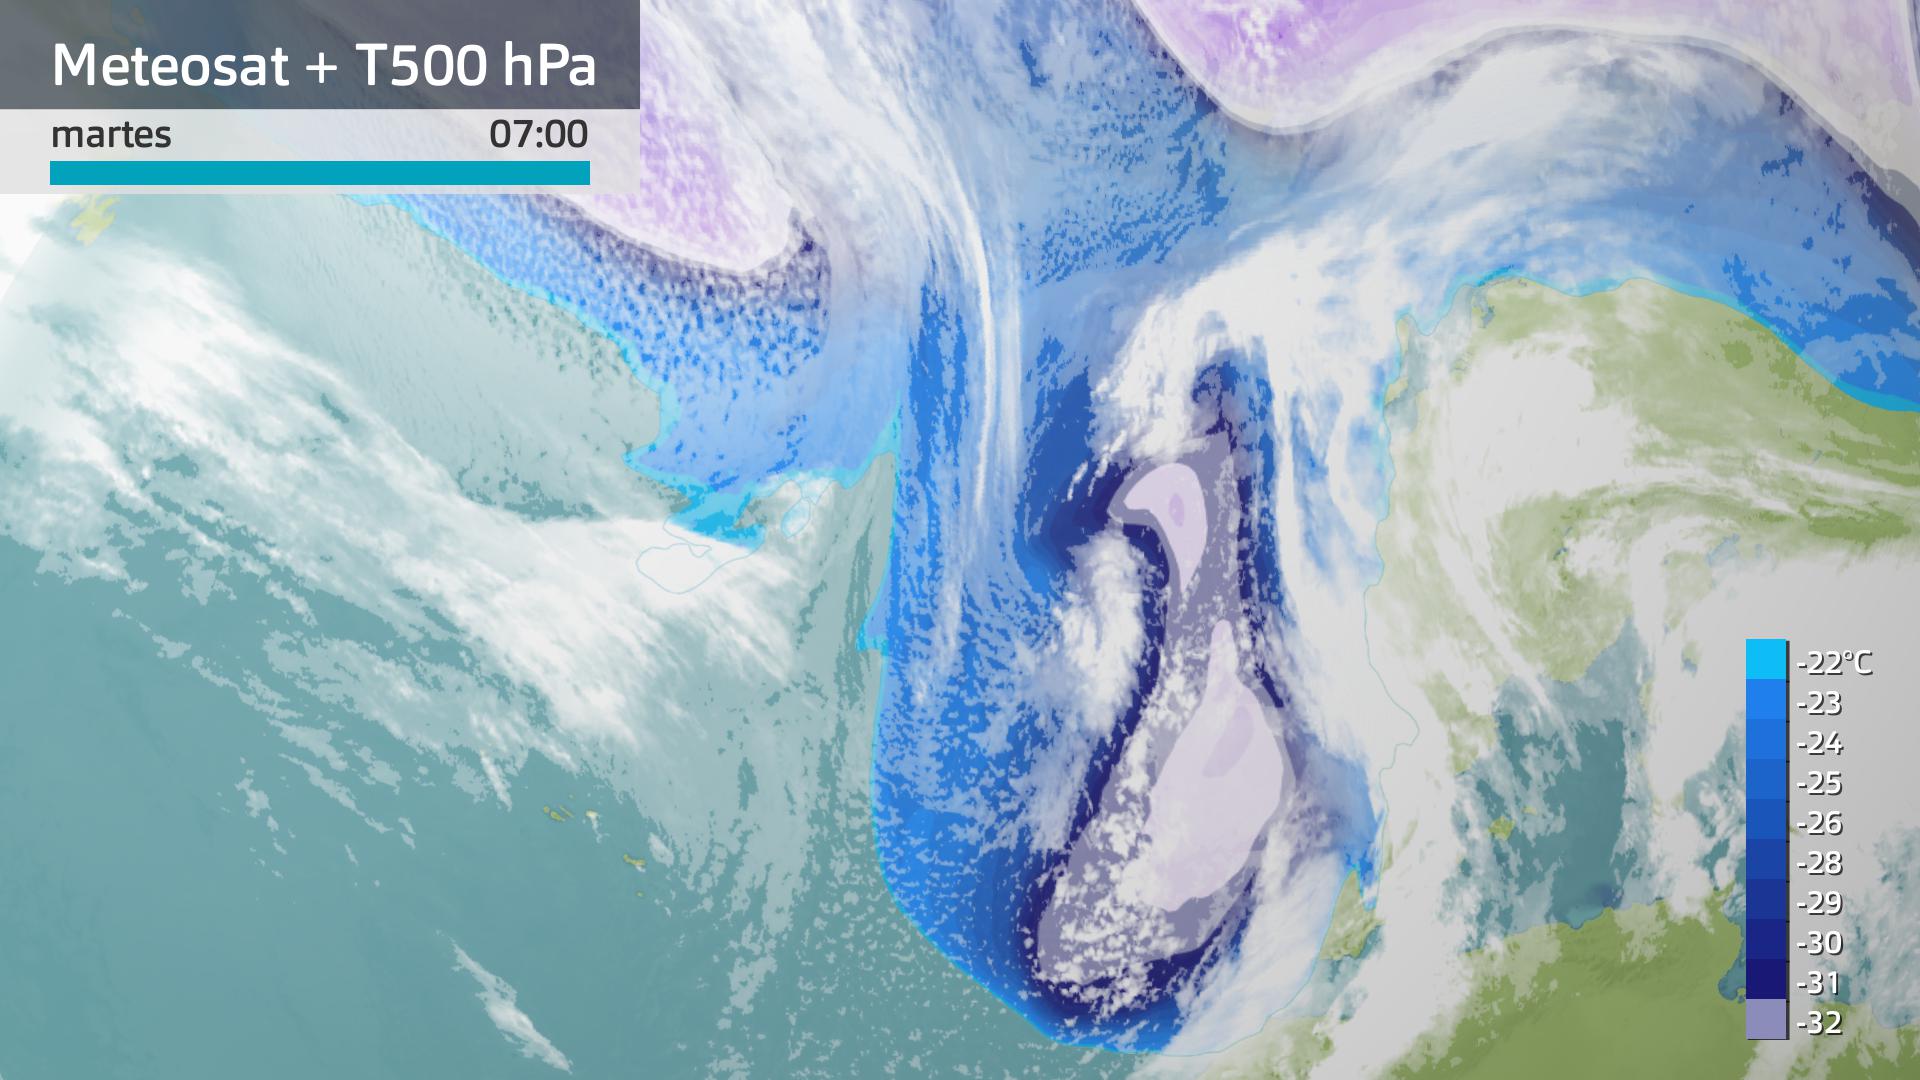 Imagen del Meteosat + temperatura a 500 hPa martes 26 de marzo 7 h.